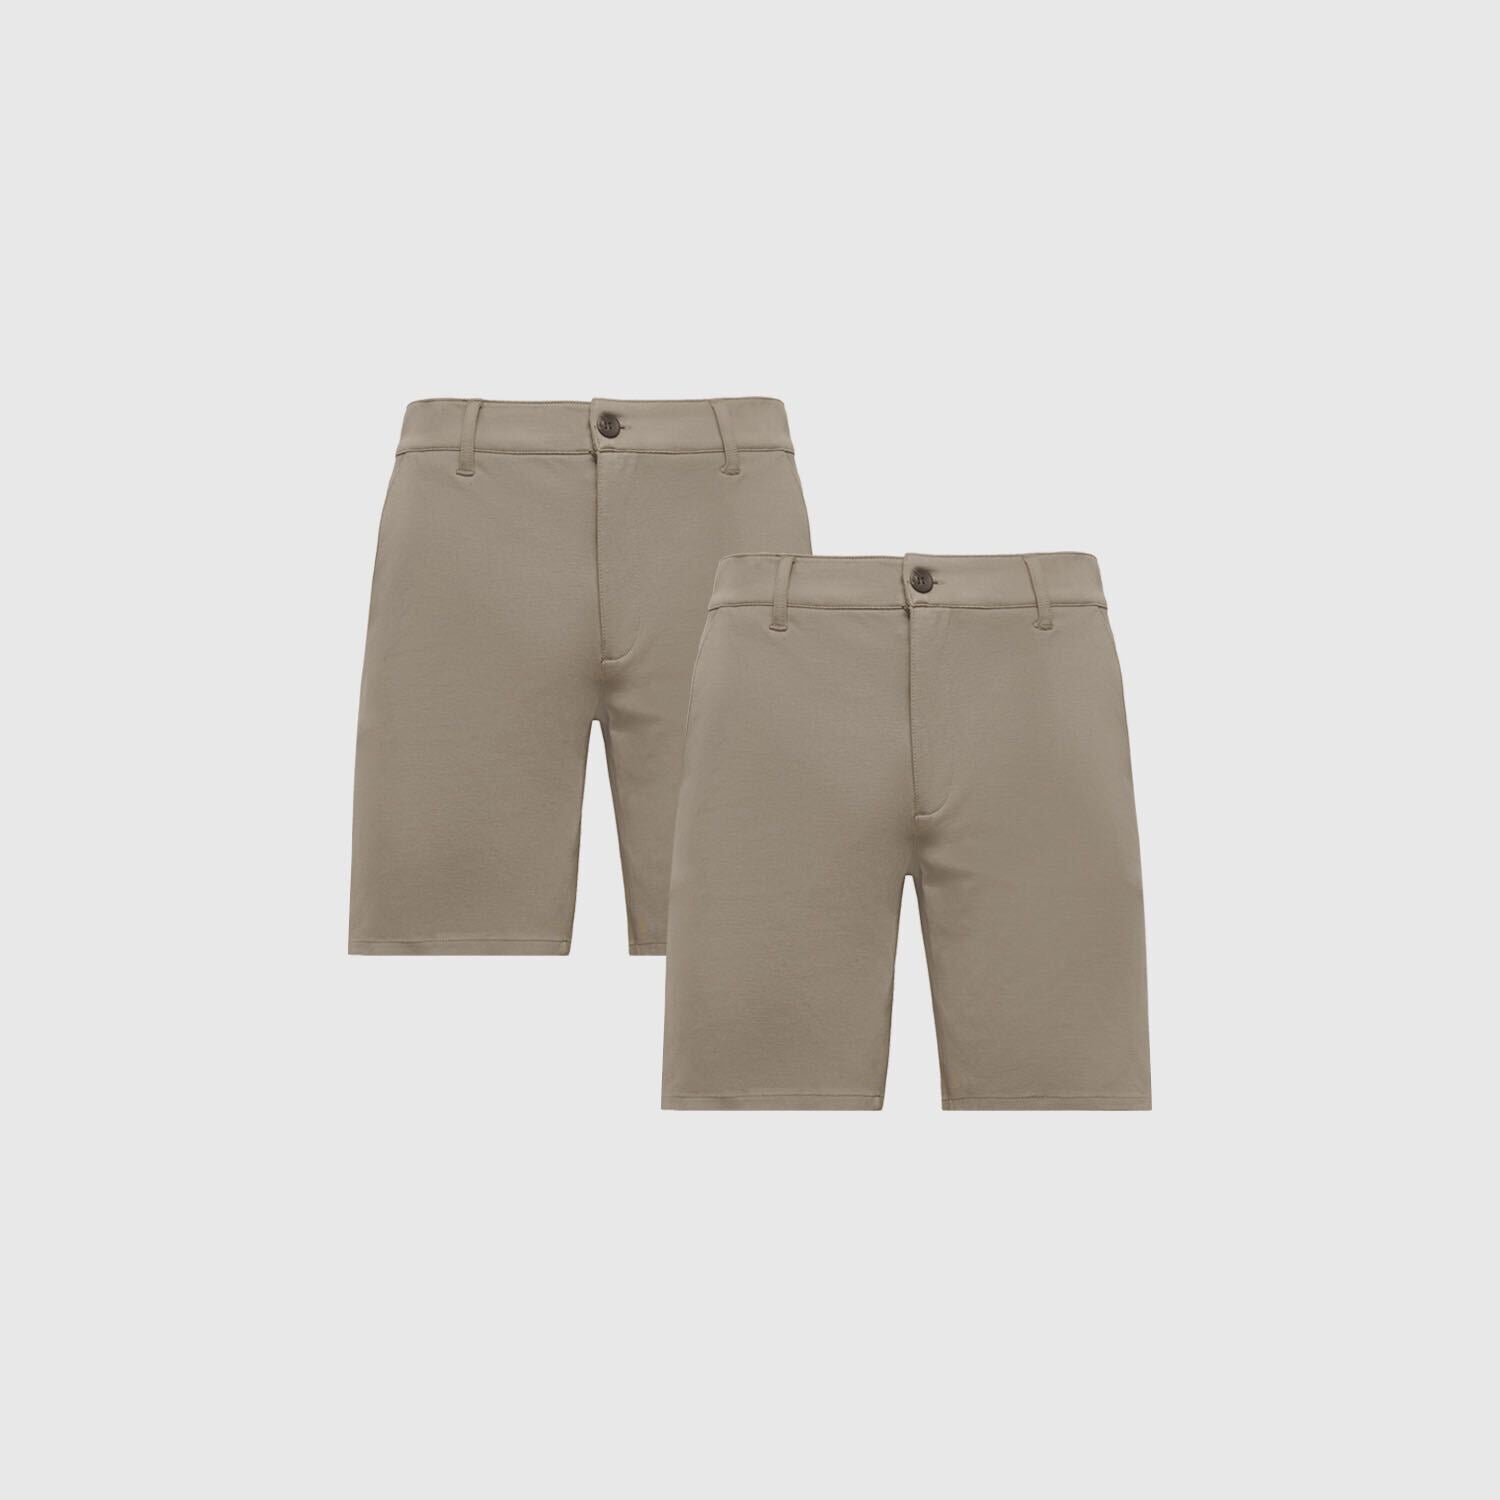 9.5" Khaki Chino Shorts 2-Pack